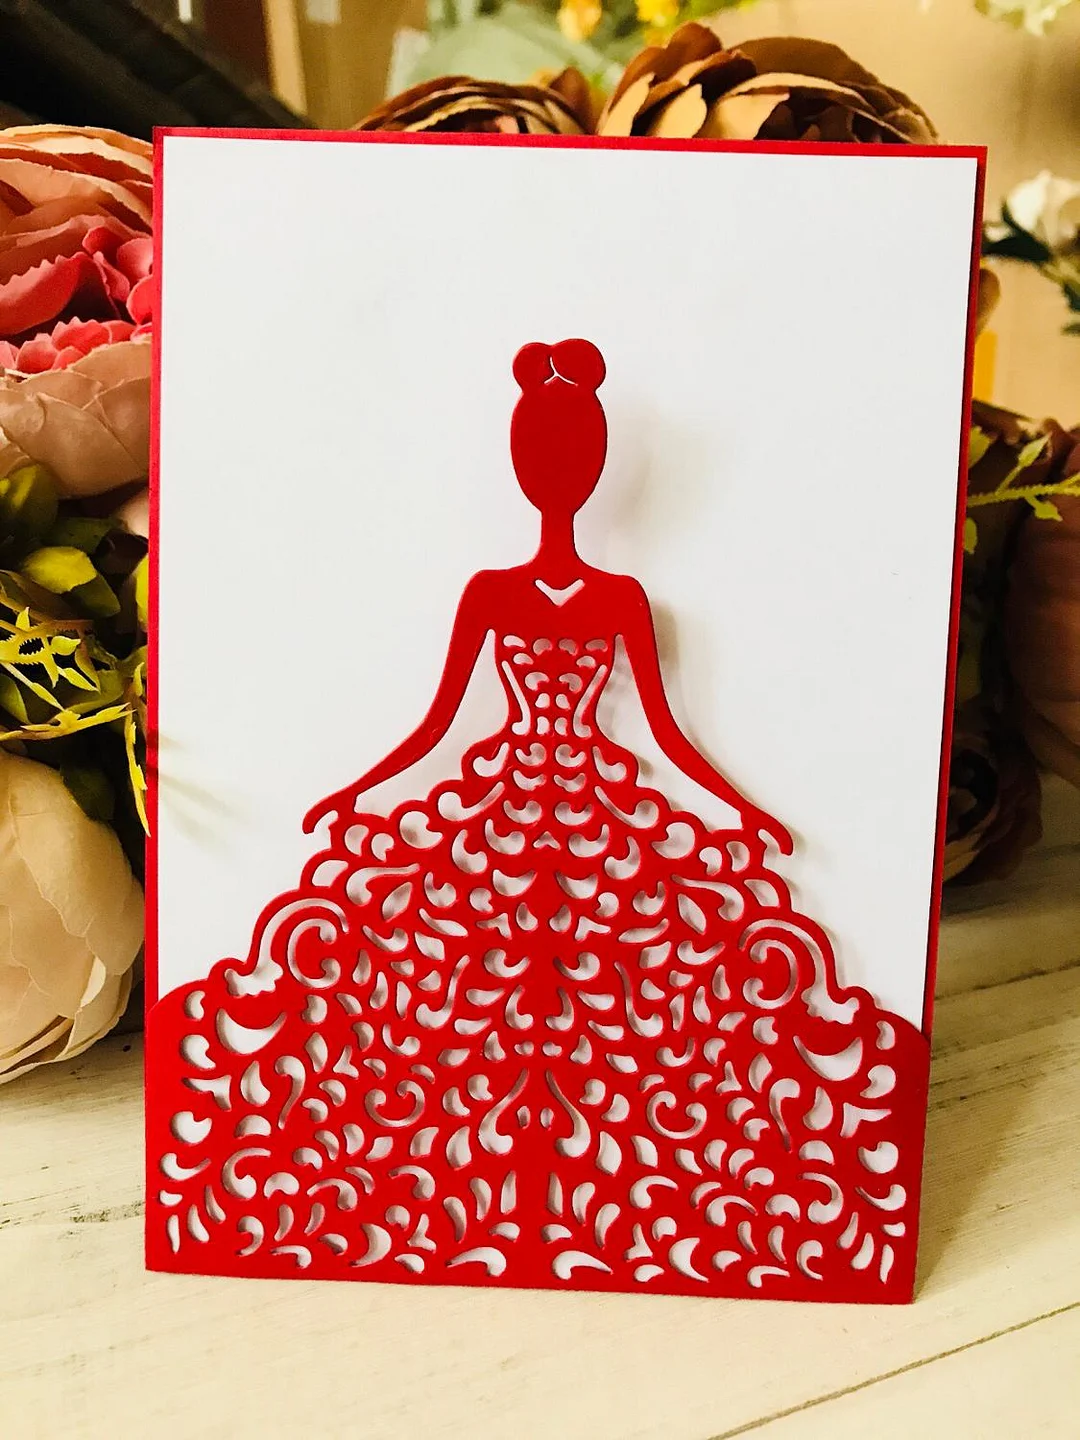 Princess invitation Craft Metal Cutting Die die cuts Birthday Scrapbooking Album DIY Paper Card Craft Embossing Die Cuts